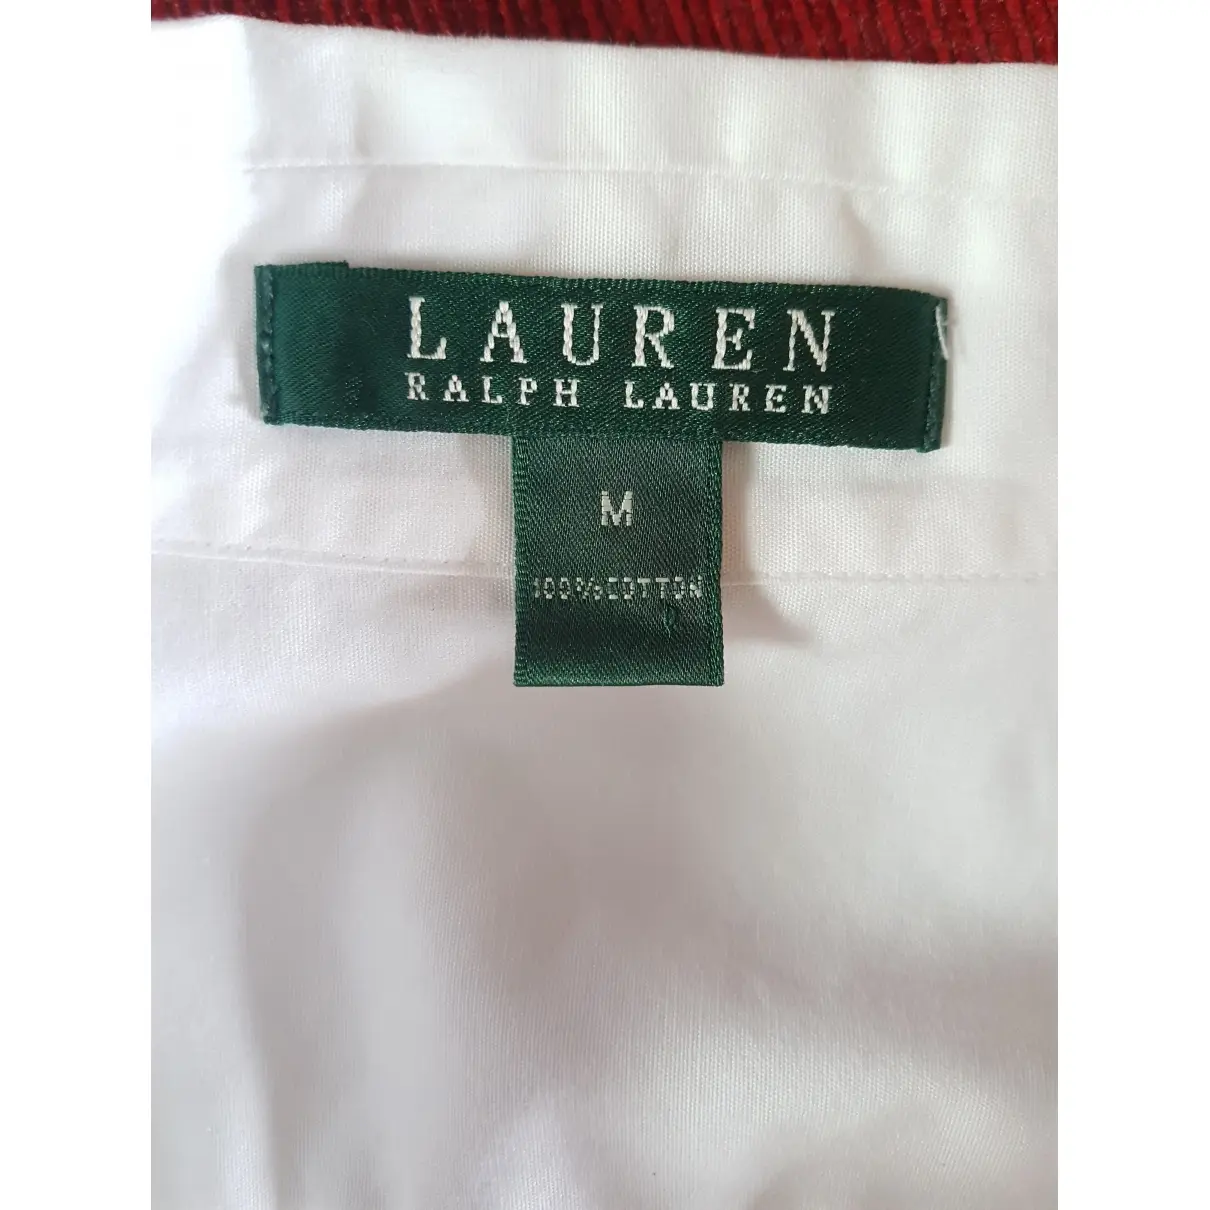 Buy Lauren Ralph Lauren Shirt online